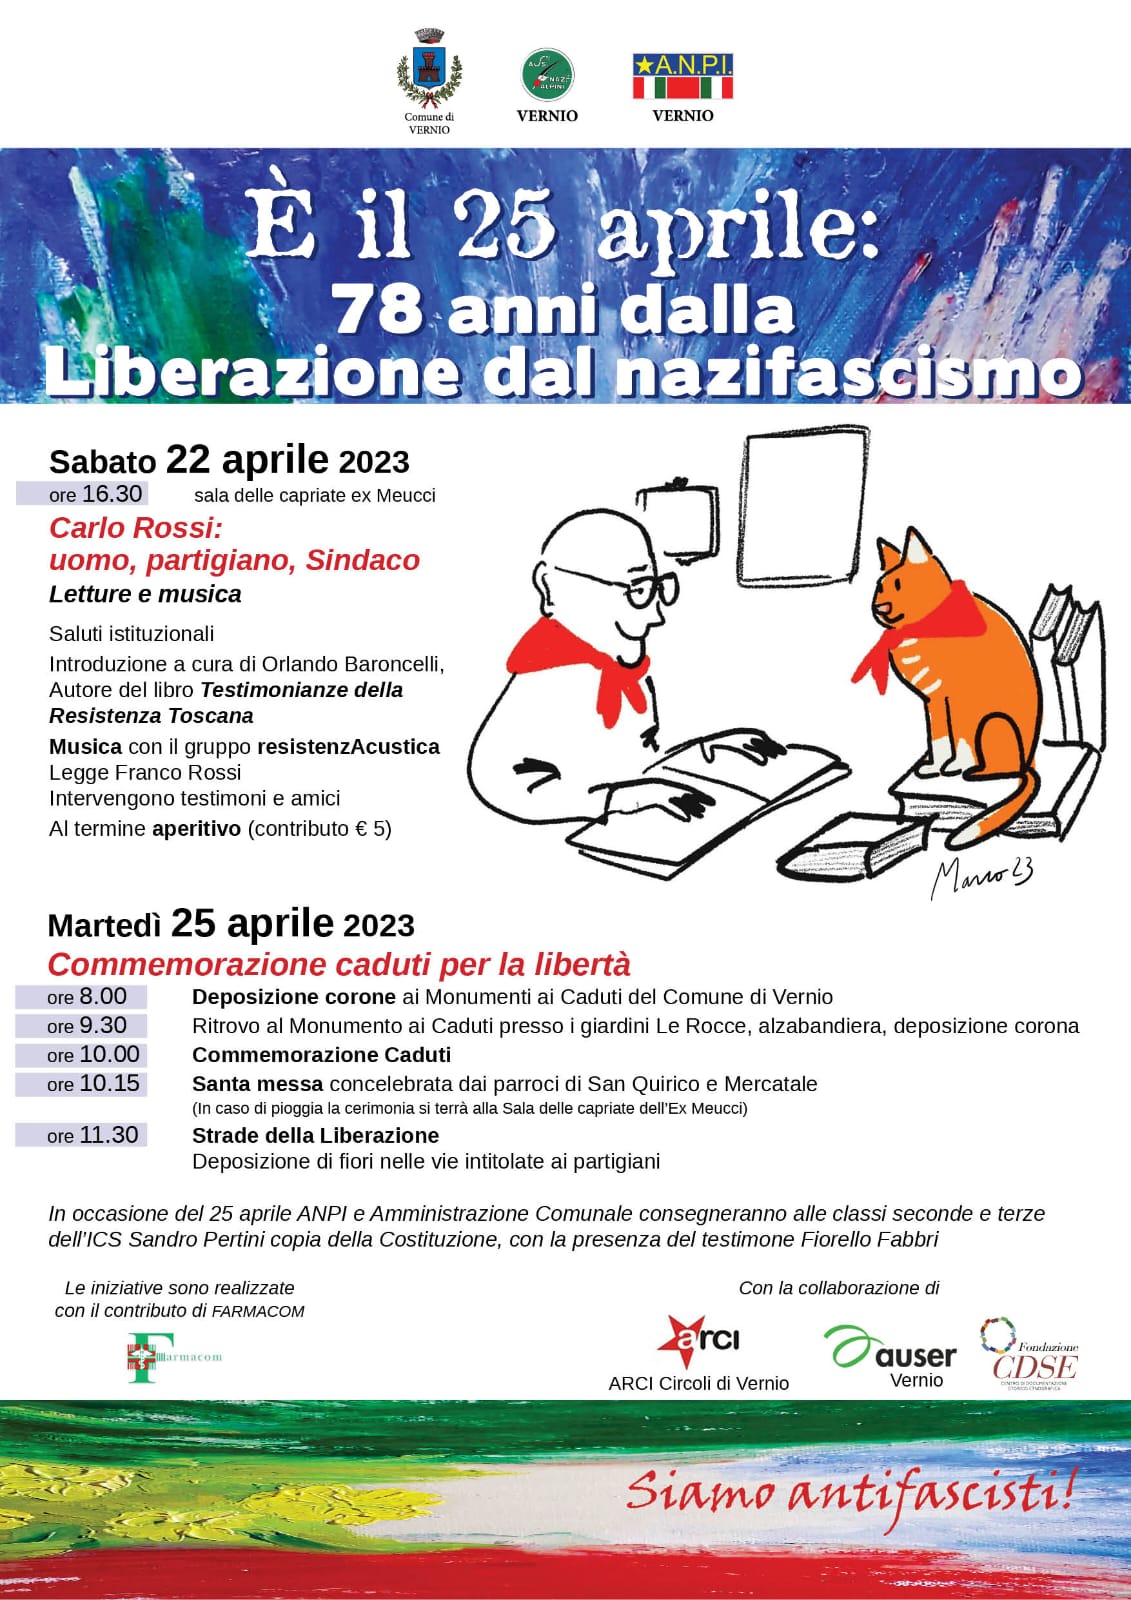 <strong>Siamo antifascisti!<br> Il 25 aprile a Vernio si ricorda con due iniziative sabato 22 aprile e martedì 25 aprile</strong>